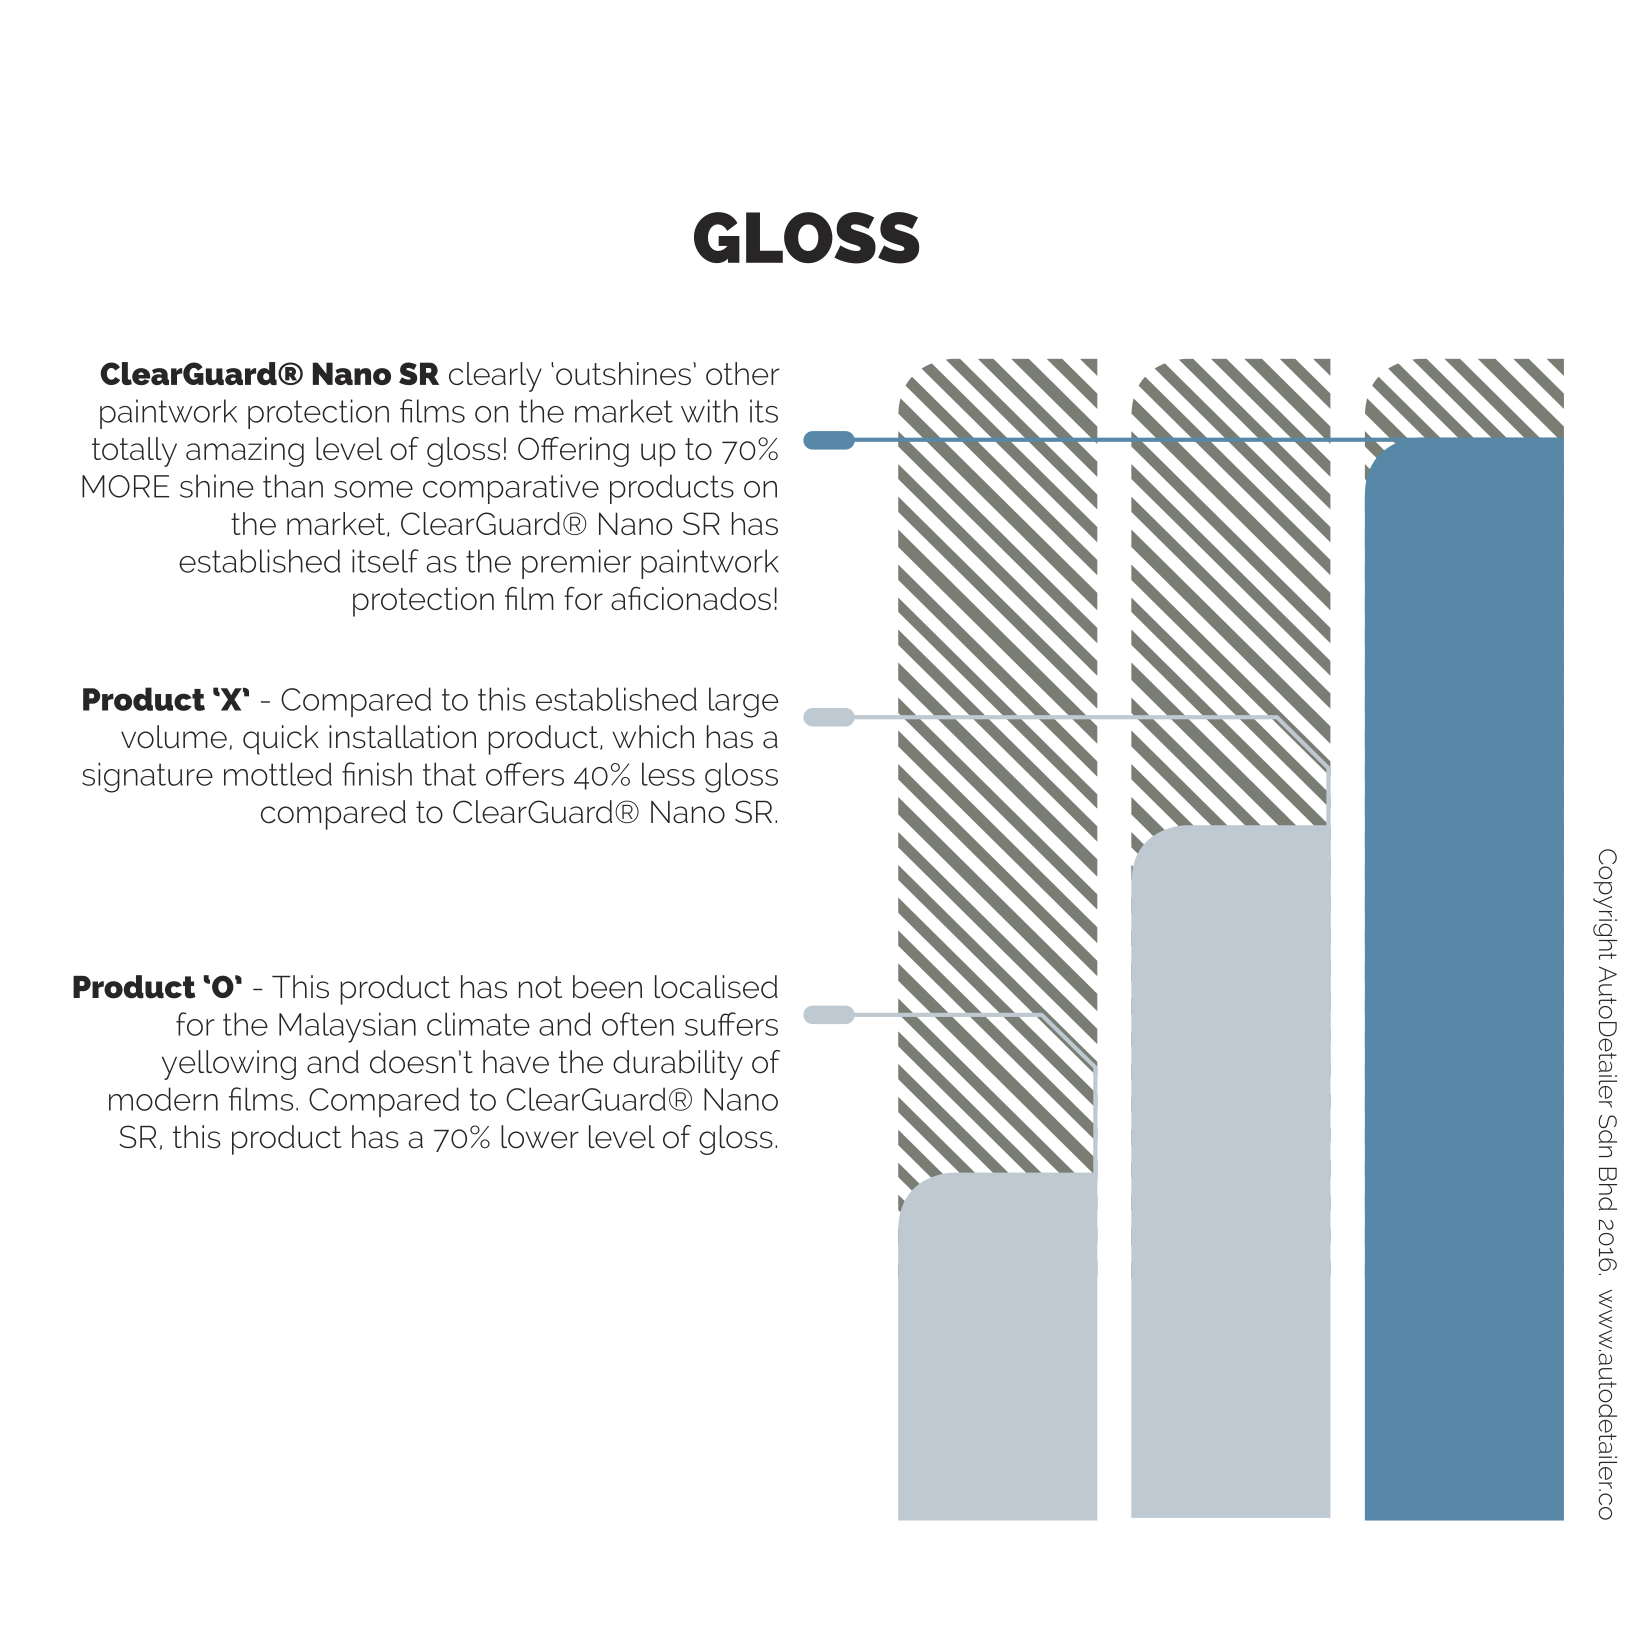 ClearGuard Nano SR infographic GLOSS V2